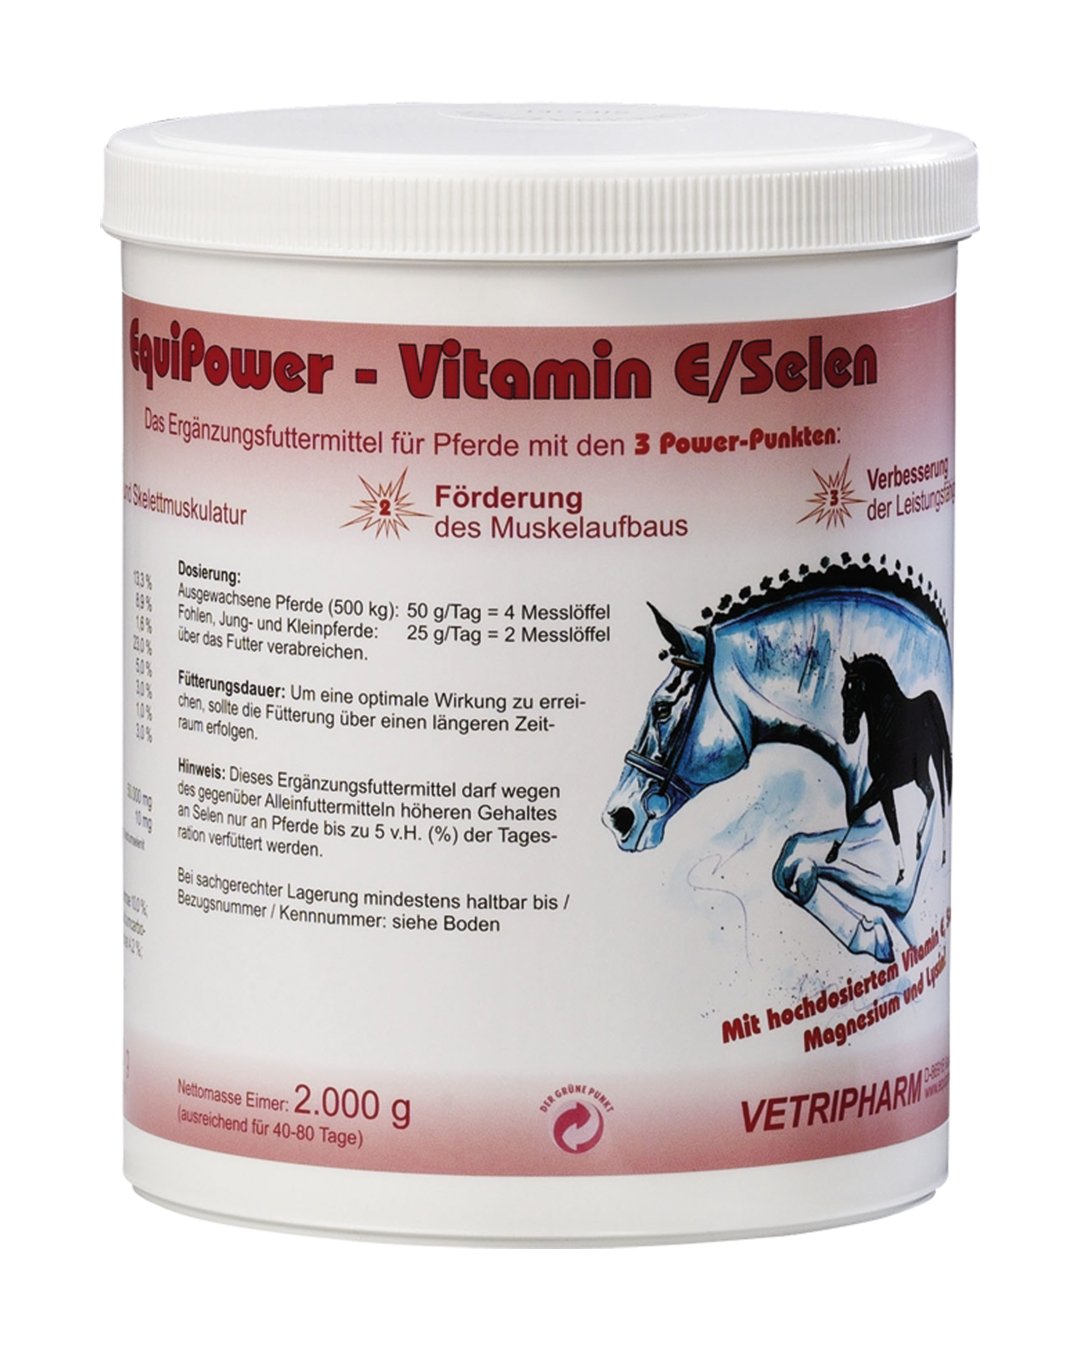 EquiPower Vitamin E